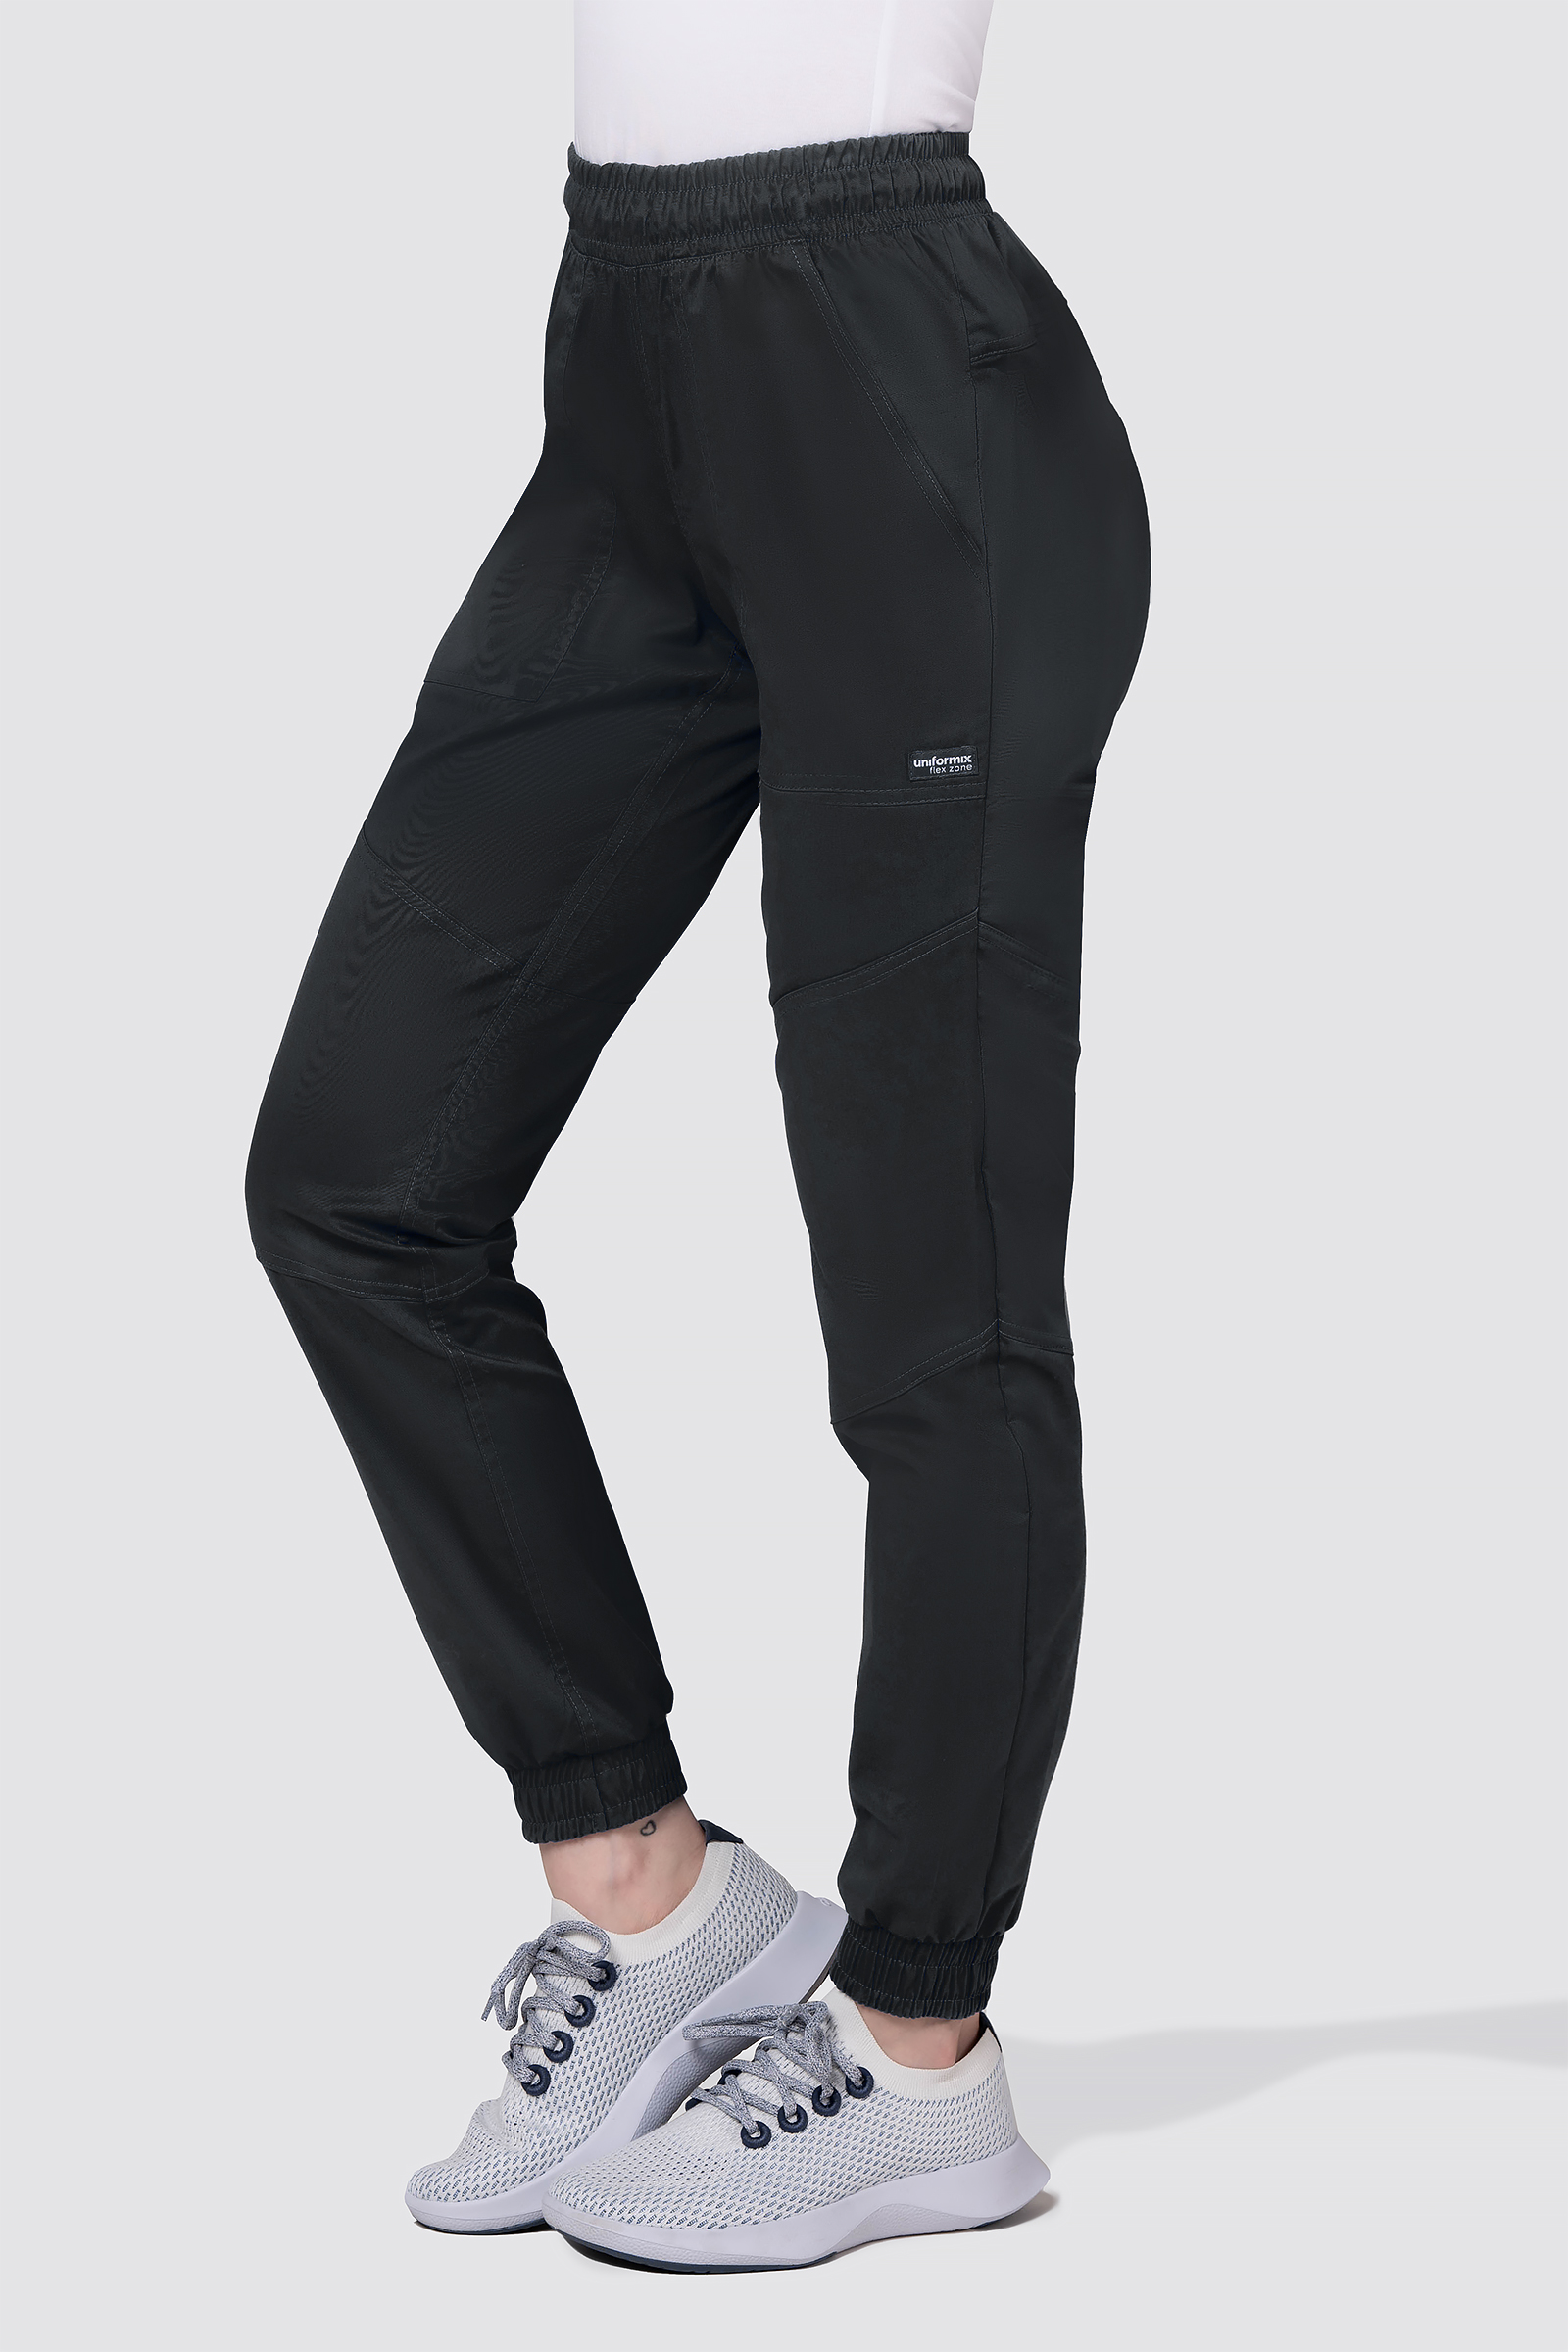 Spodnie medyczne damskie, joggery Uniformix FLEX ZONE, FZ2056, czarny.  czarny / spodnie i spódnice medyczne / Sklep internetowy